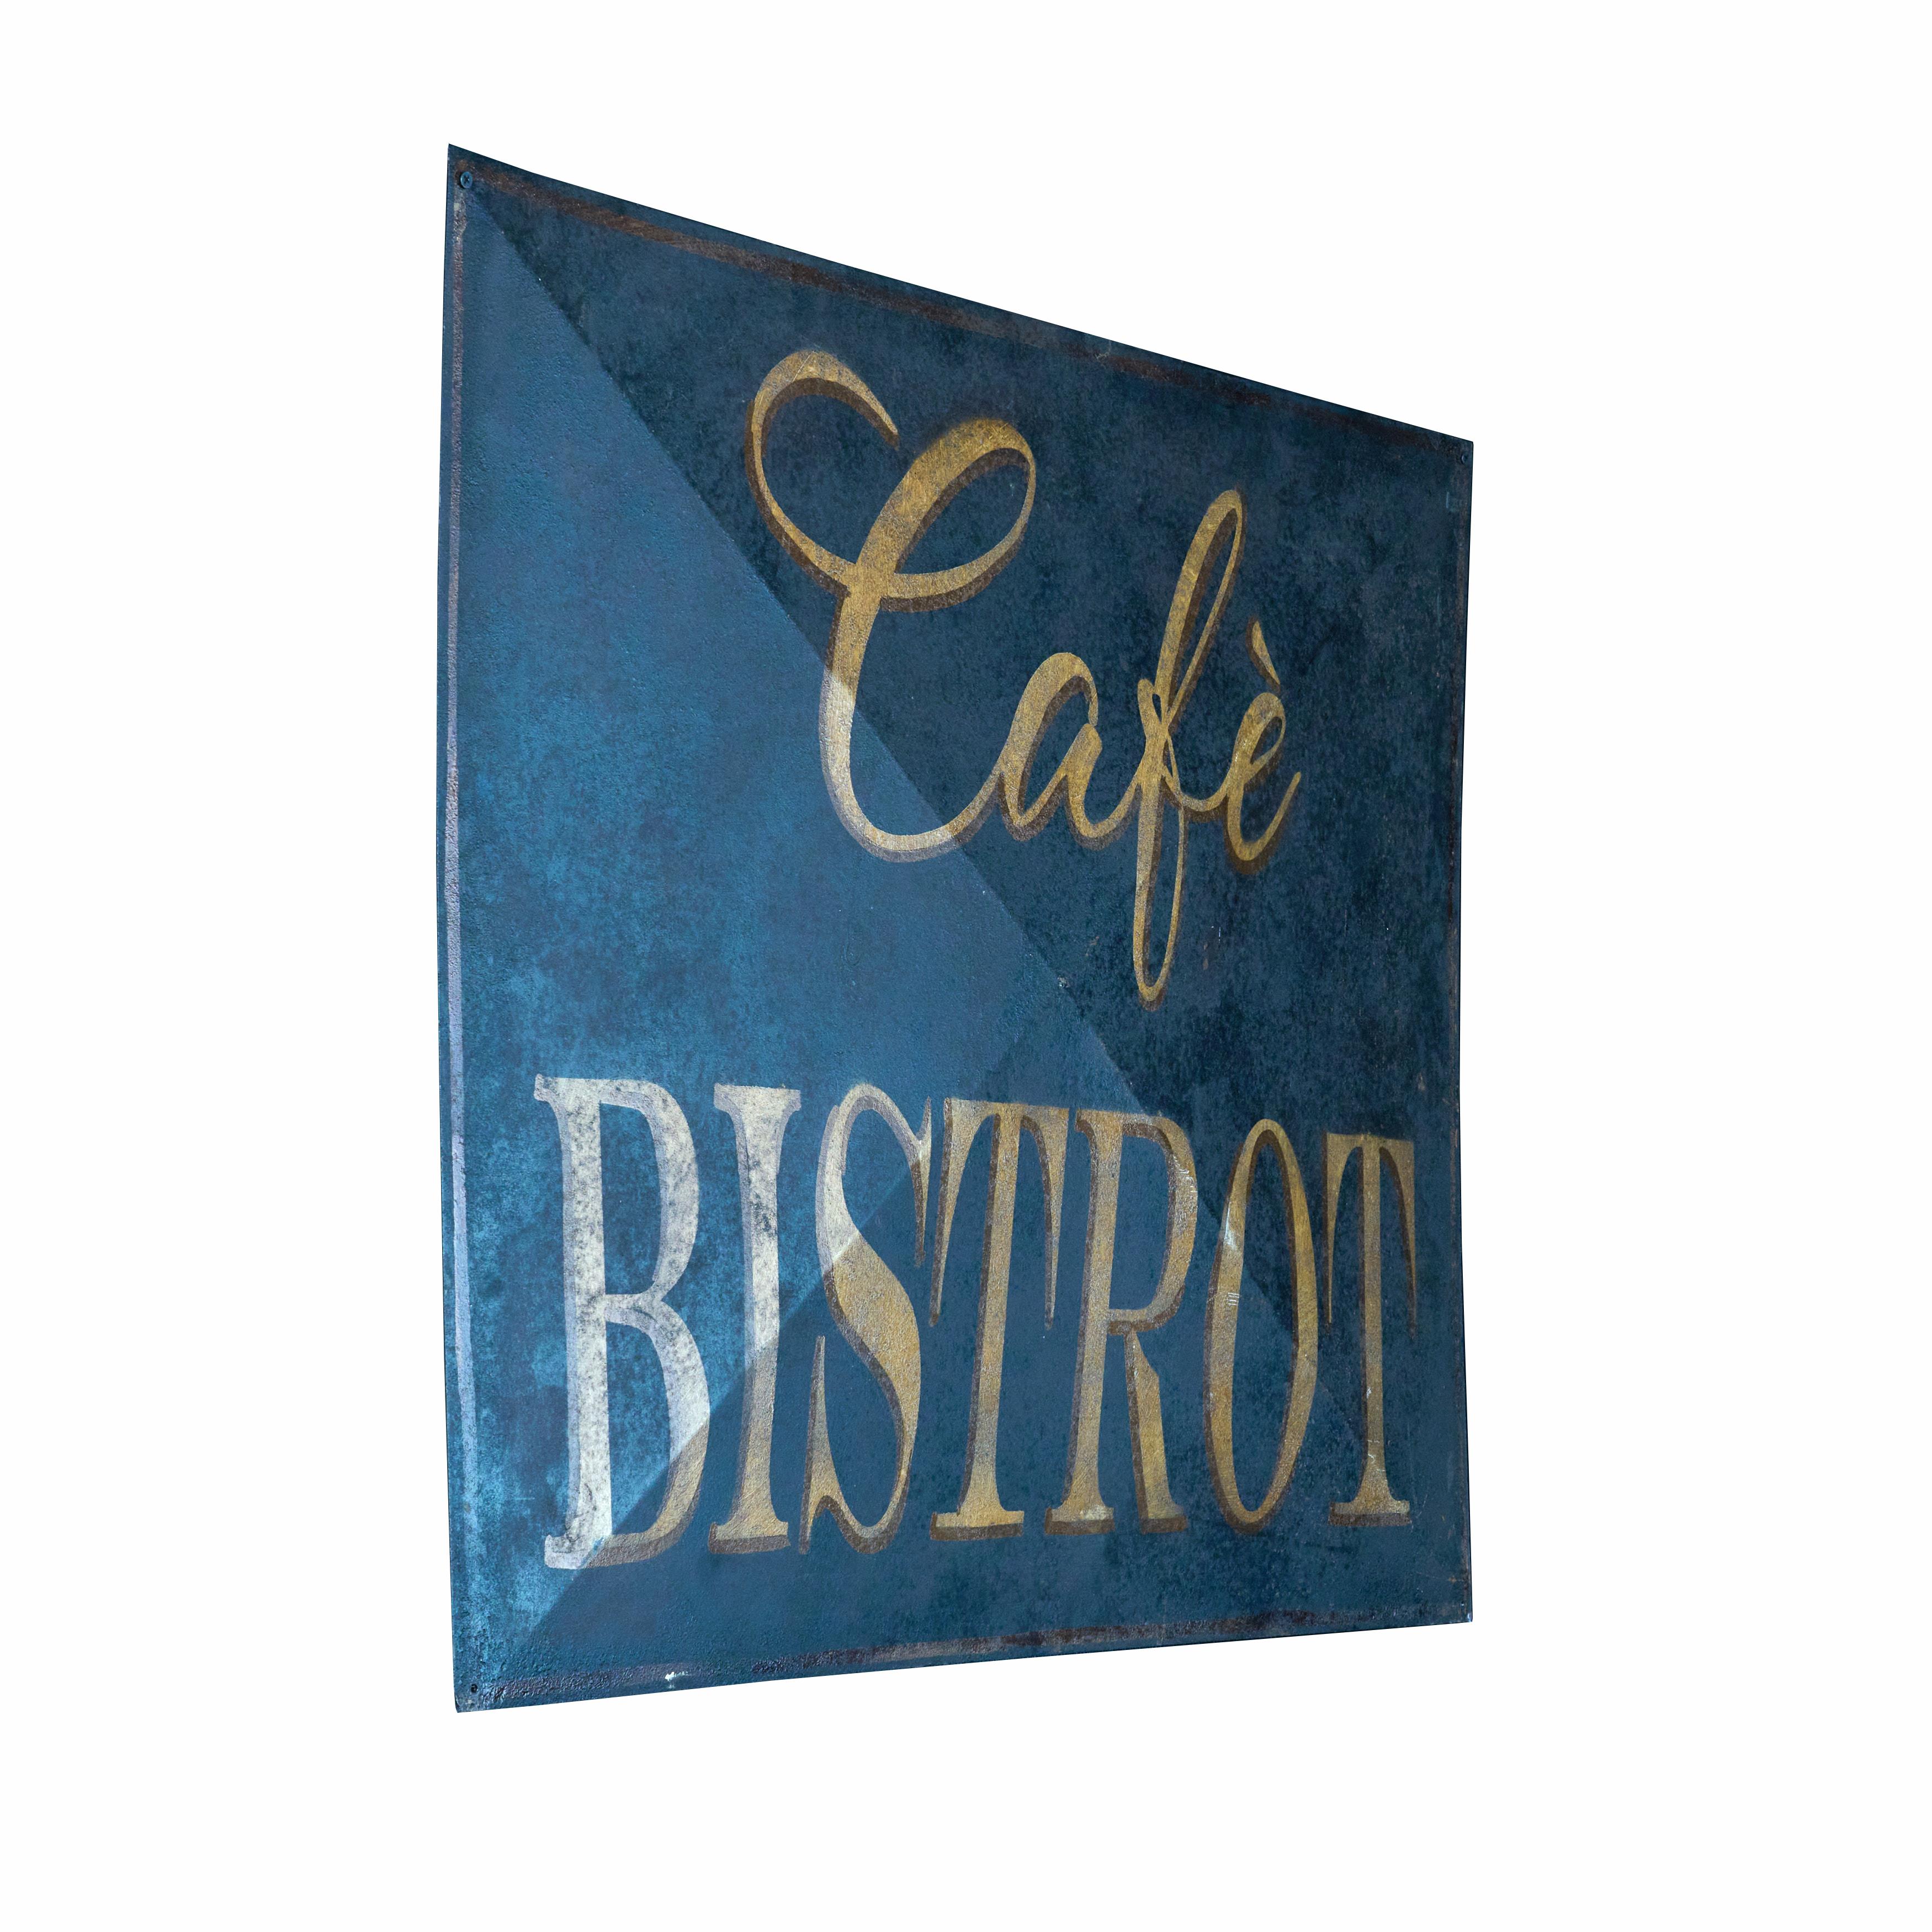 Original Cafe-Bistro-Schild. Fantastisches Aussehen mit unglaublicher Farbe und Patina. Toller Zustand. 

